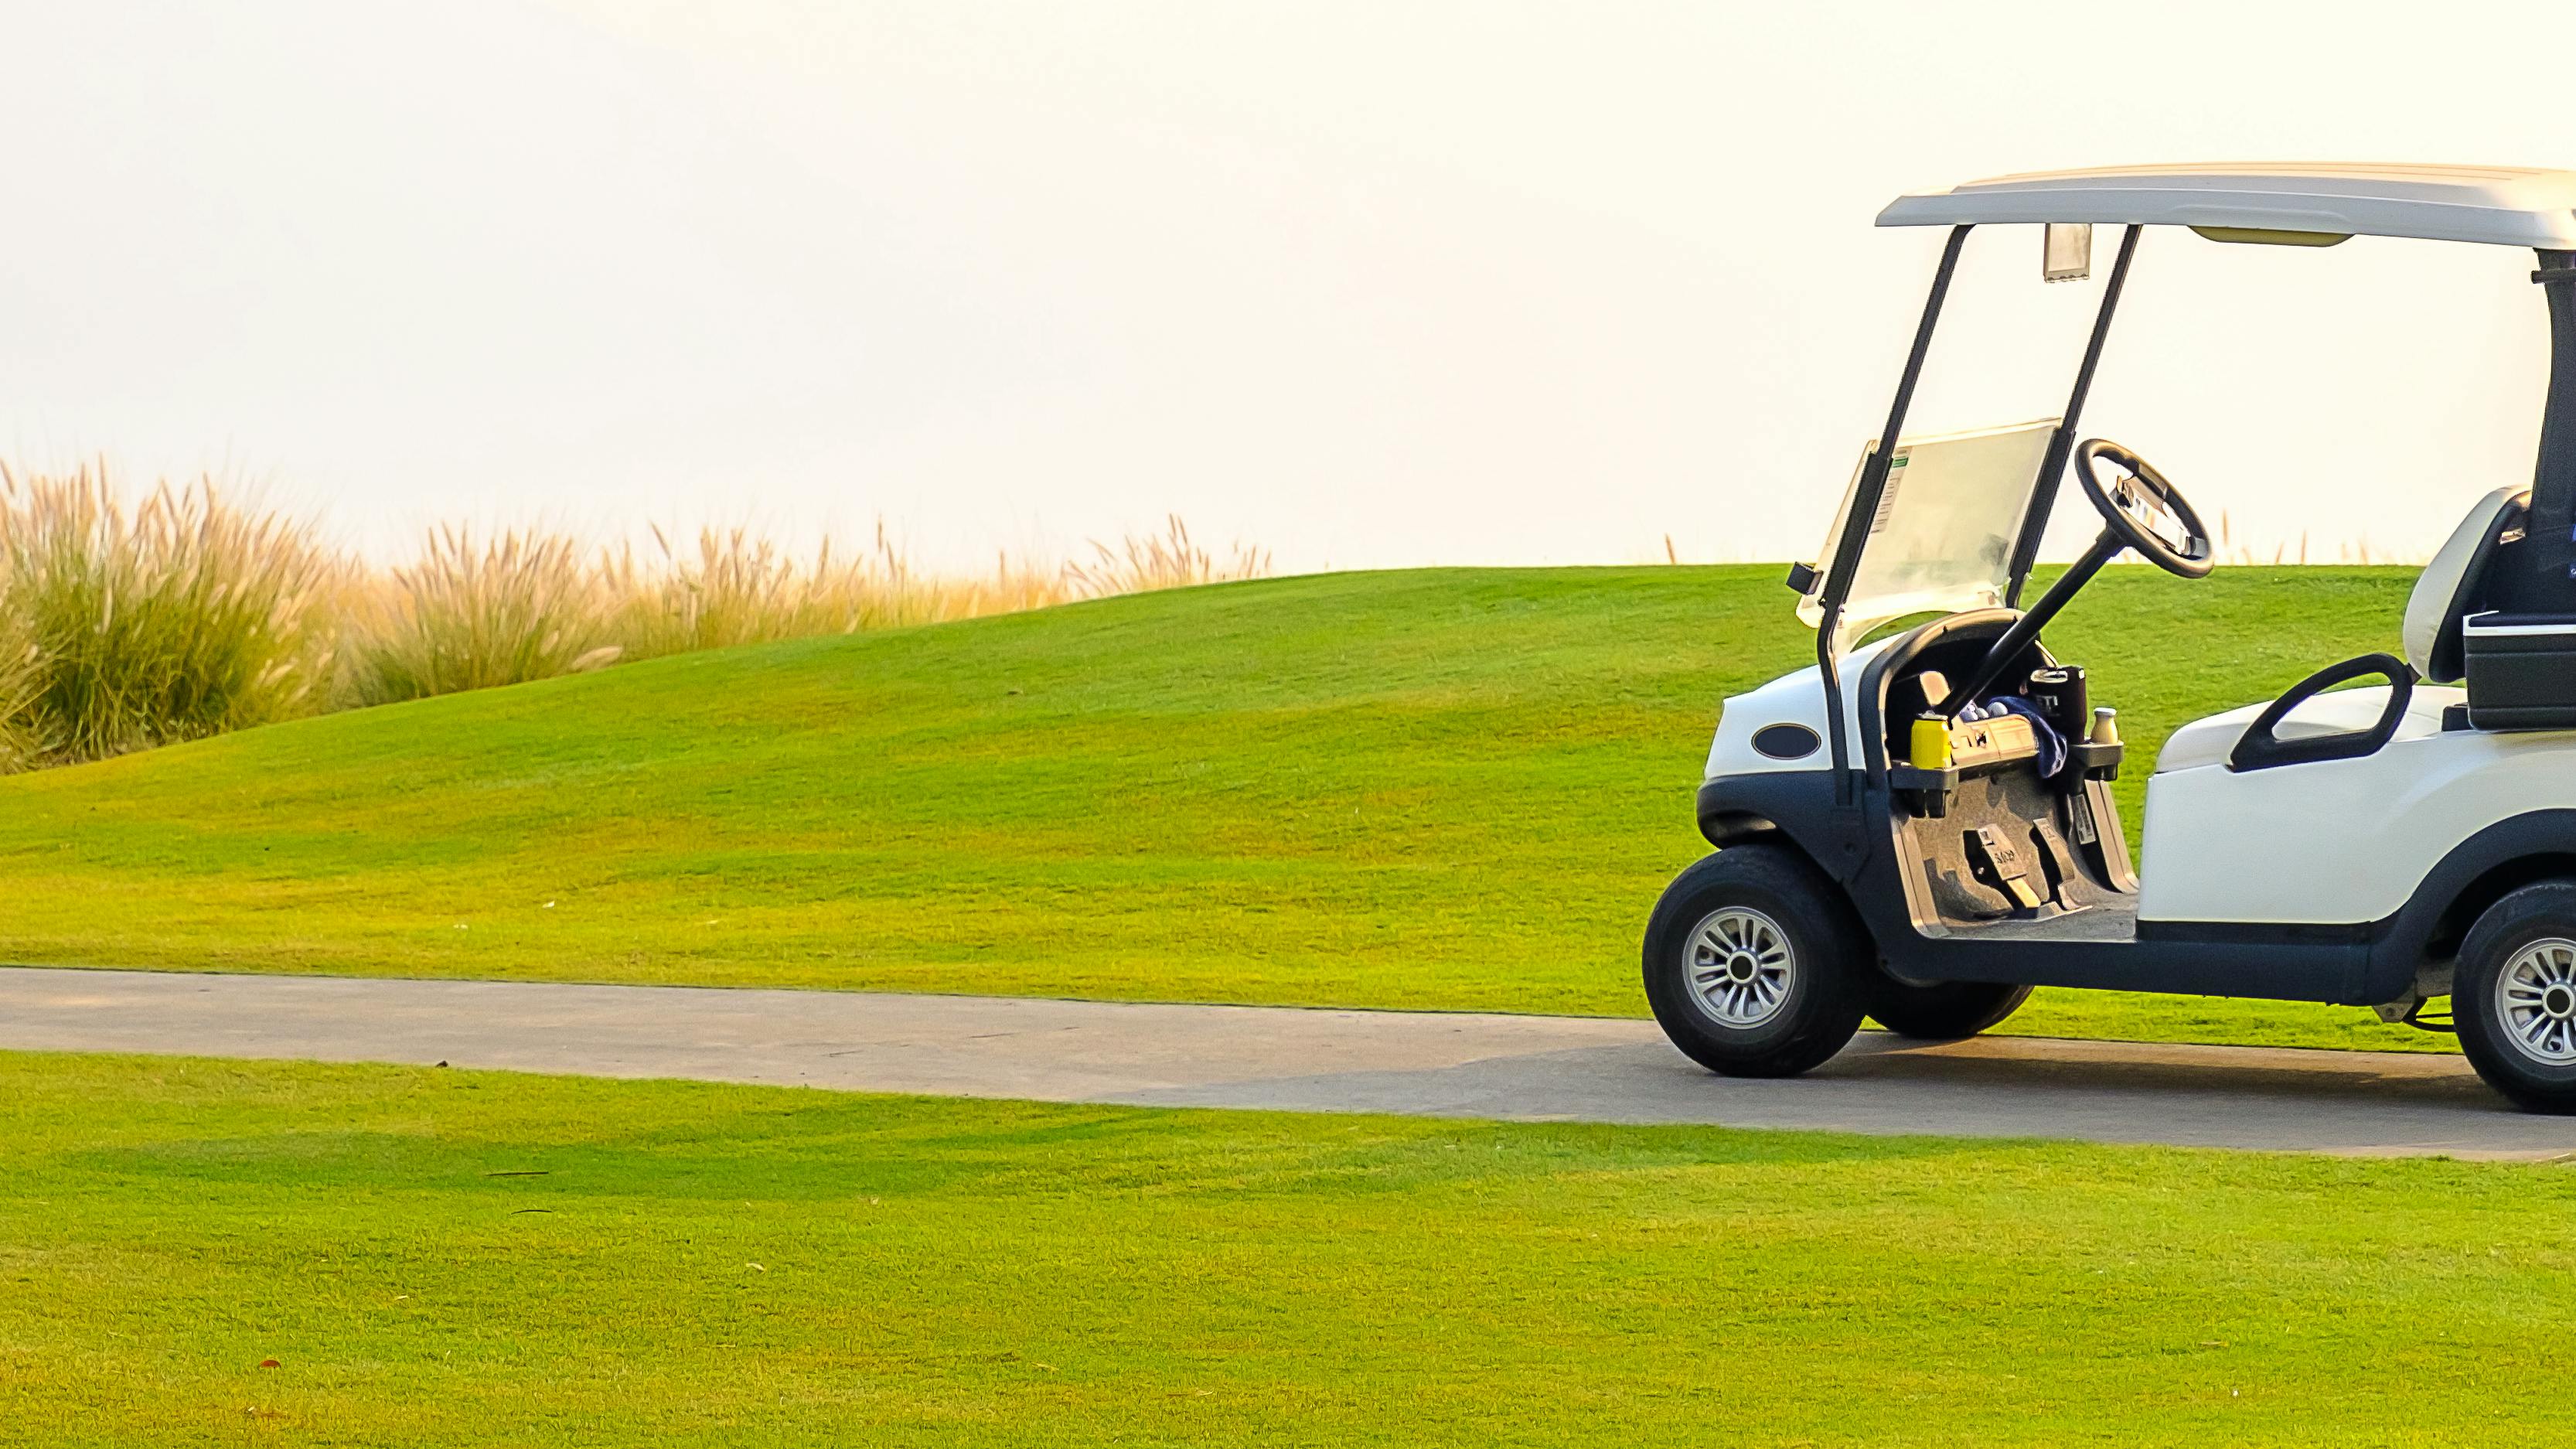 A golf cart on a golf course. 